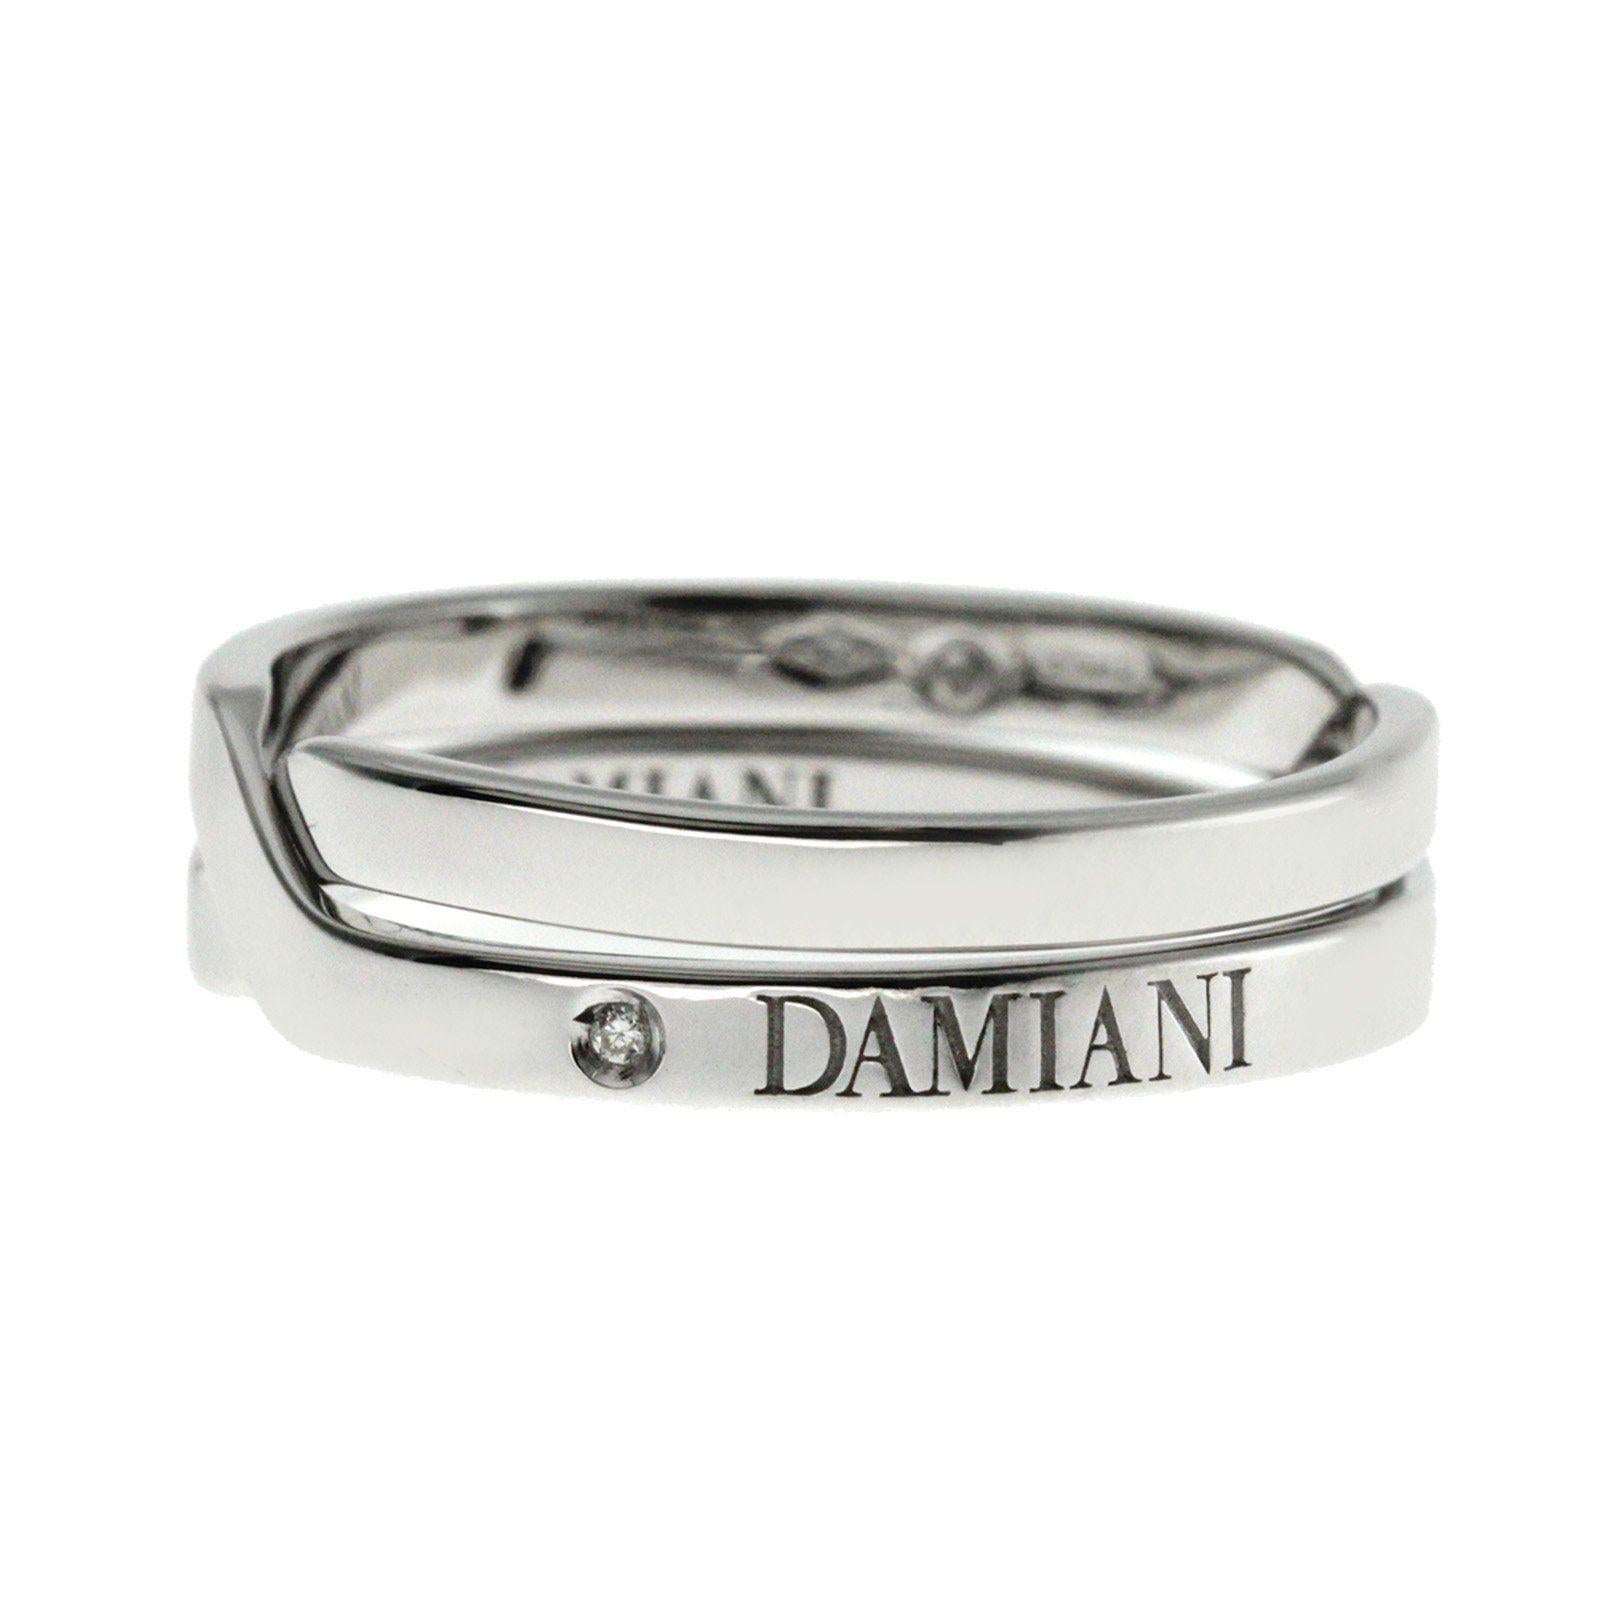 Damiani Interlock 18 Karat White Gold Diamond Band Ring 1